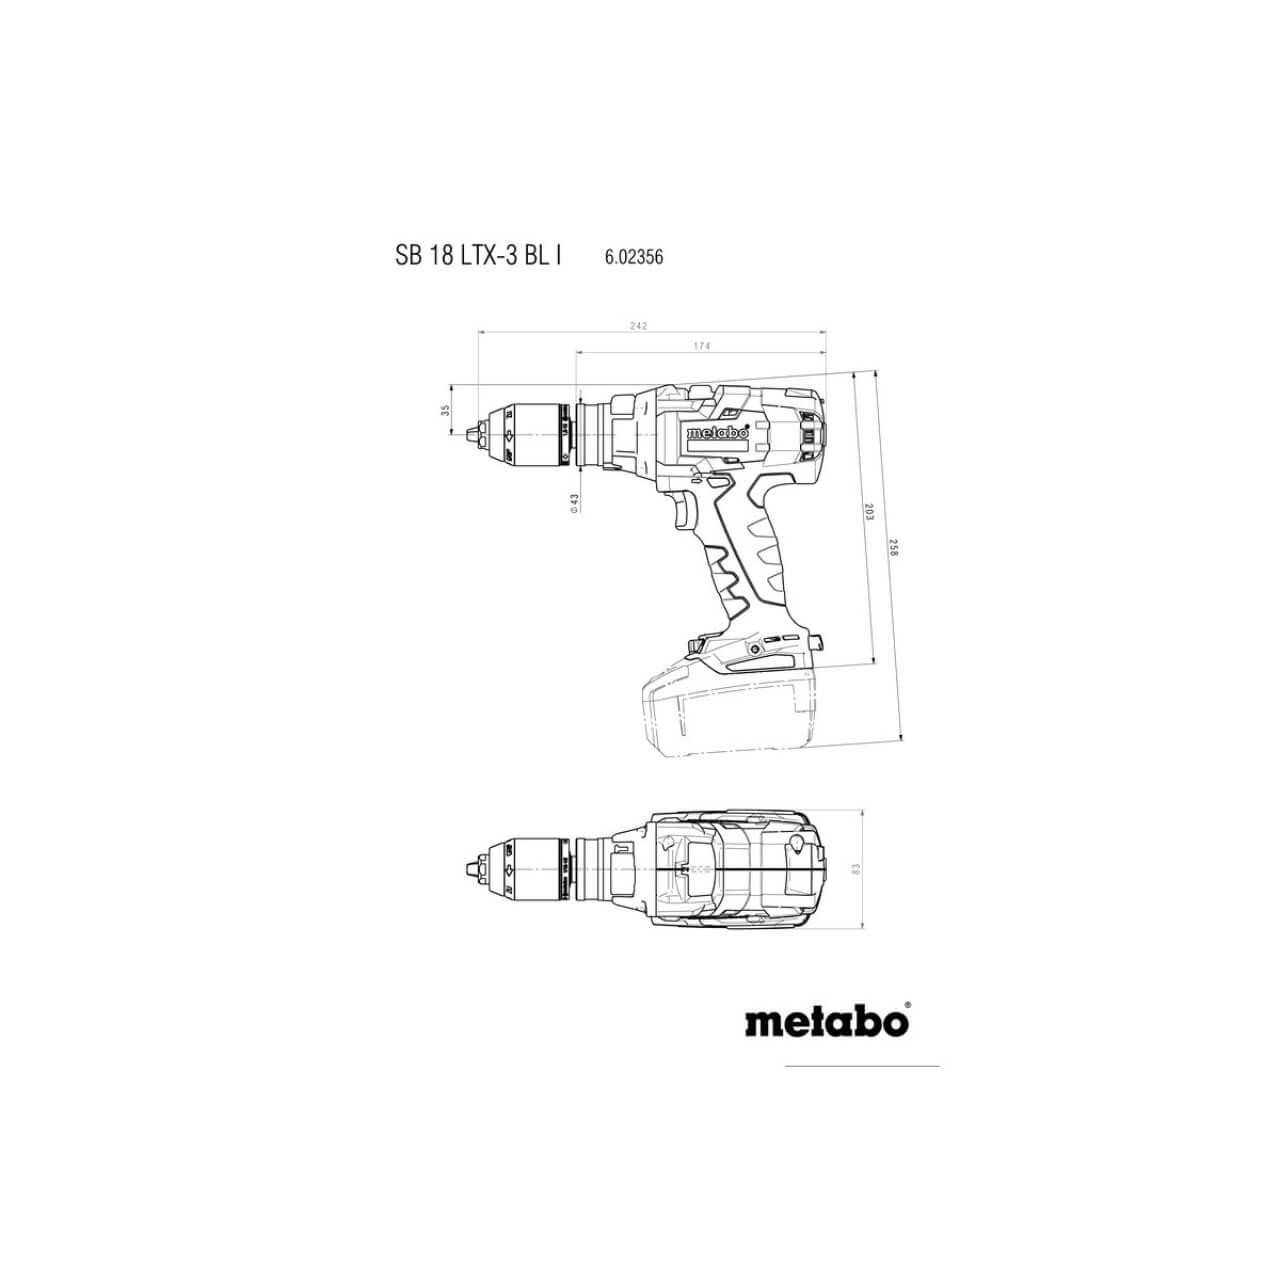 Metabo SB 18 LTX-3 BL I 18V Brushless 3 Speed LTX Class Hammer Drill 13mm - Skin Only